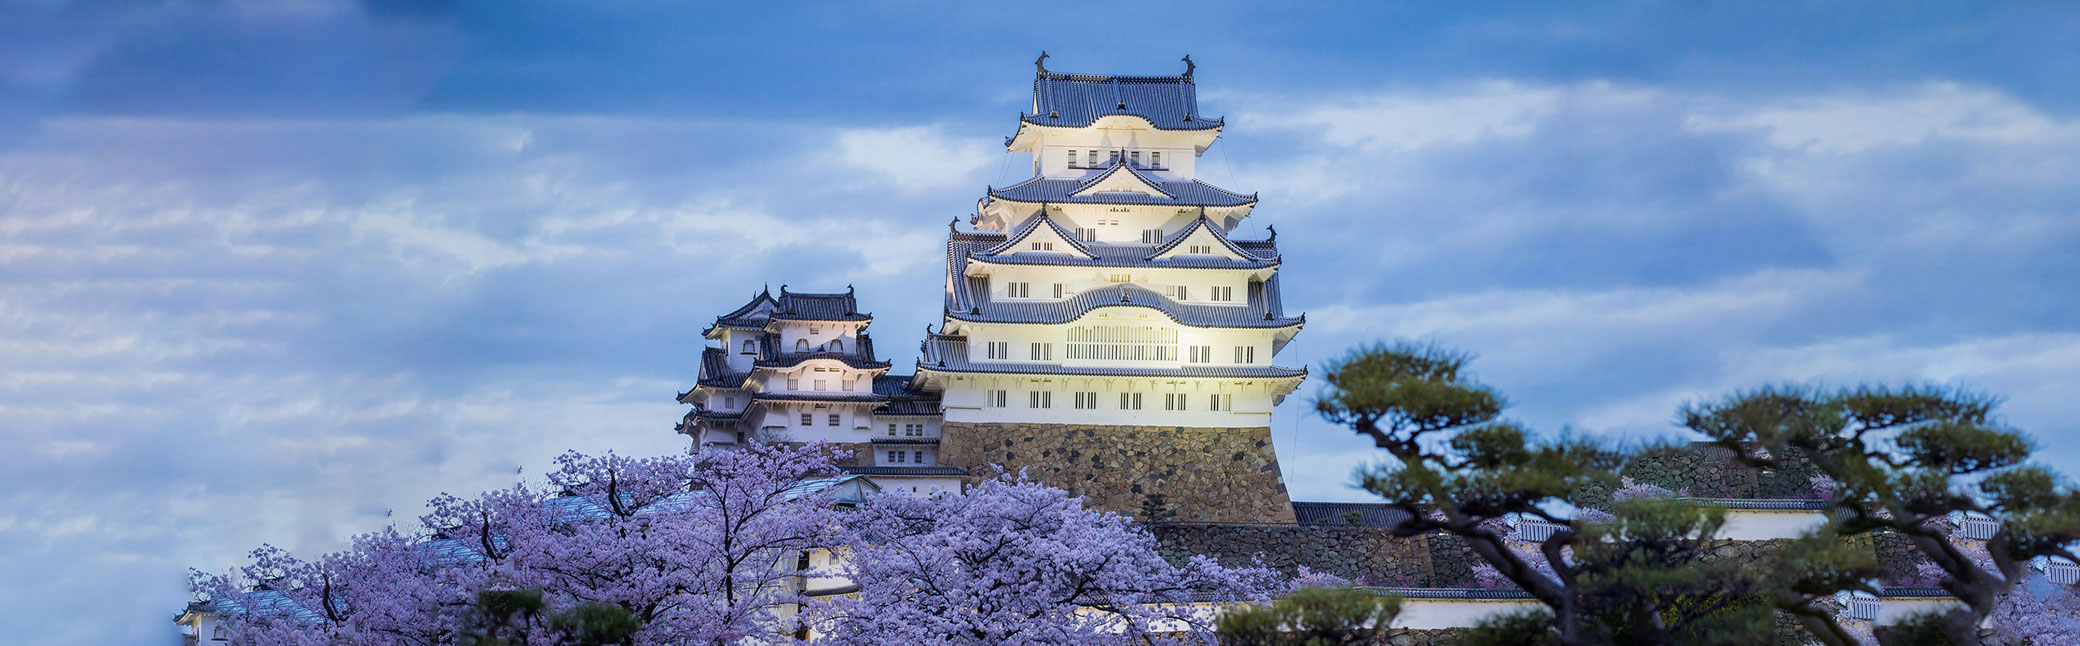 16พิกัด เที่ยวปราสาทญี่ปุ่น เที่ยวญี่ปุ่นเมื่อไหร่จะต้องไปเช็คอินให้ได้